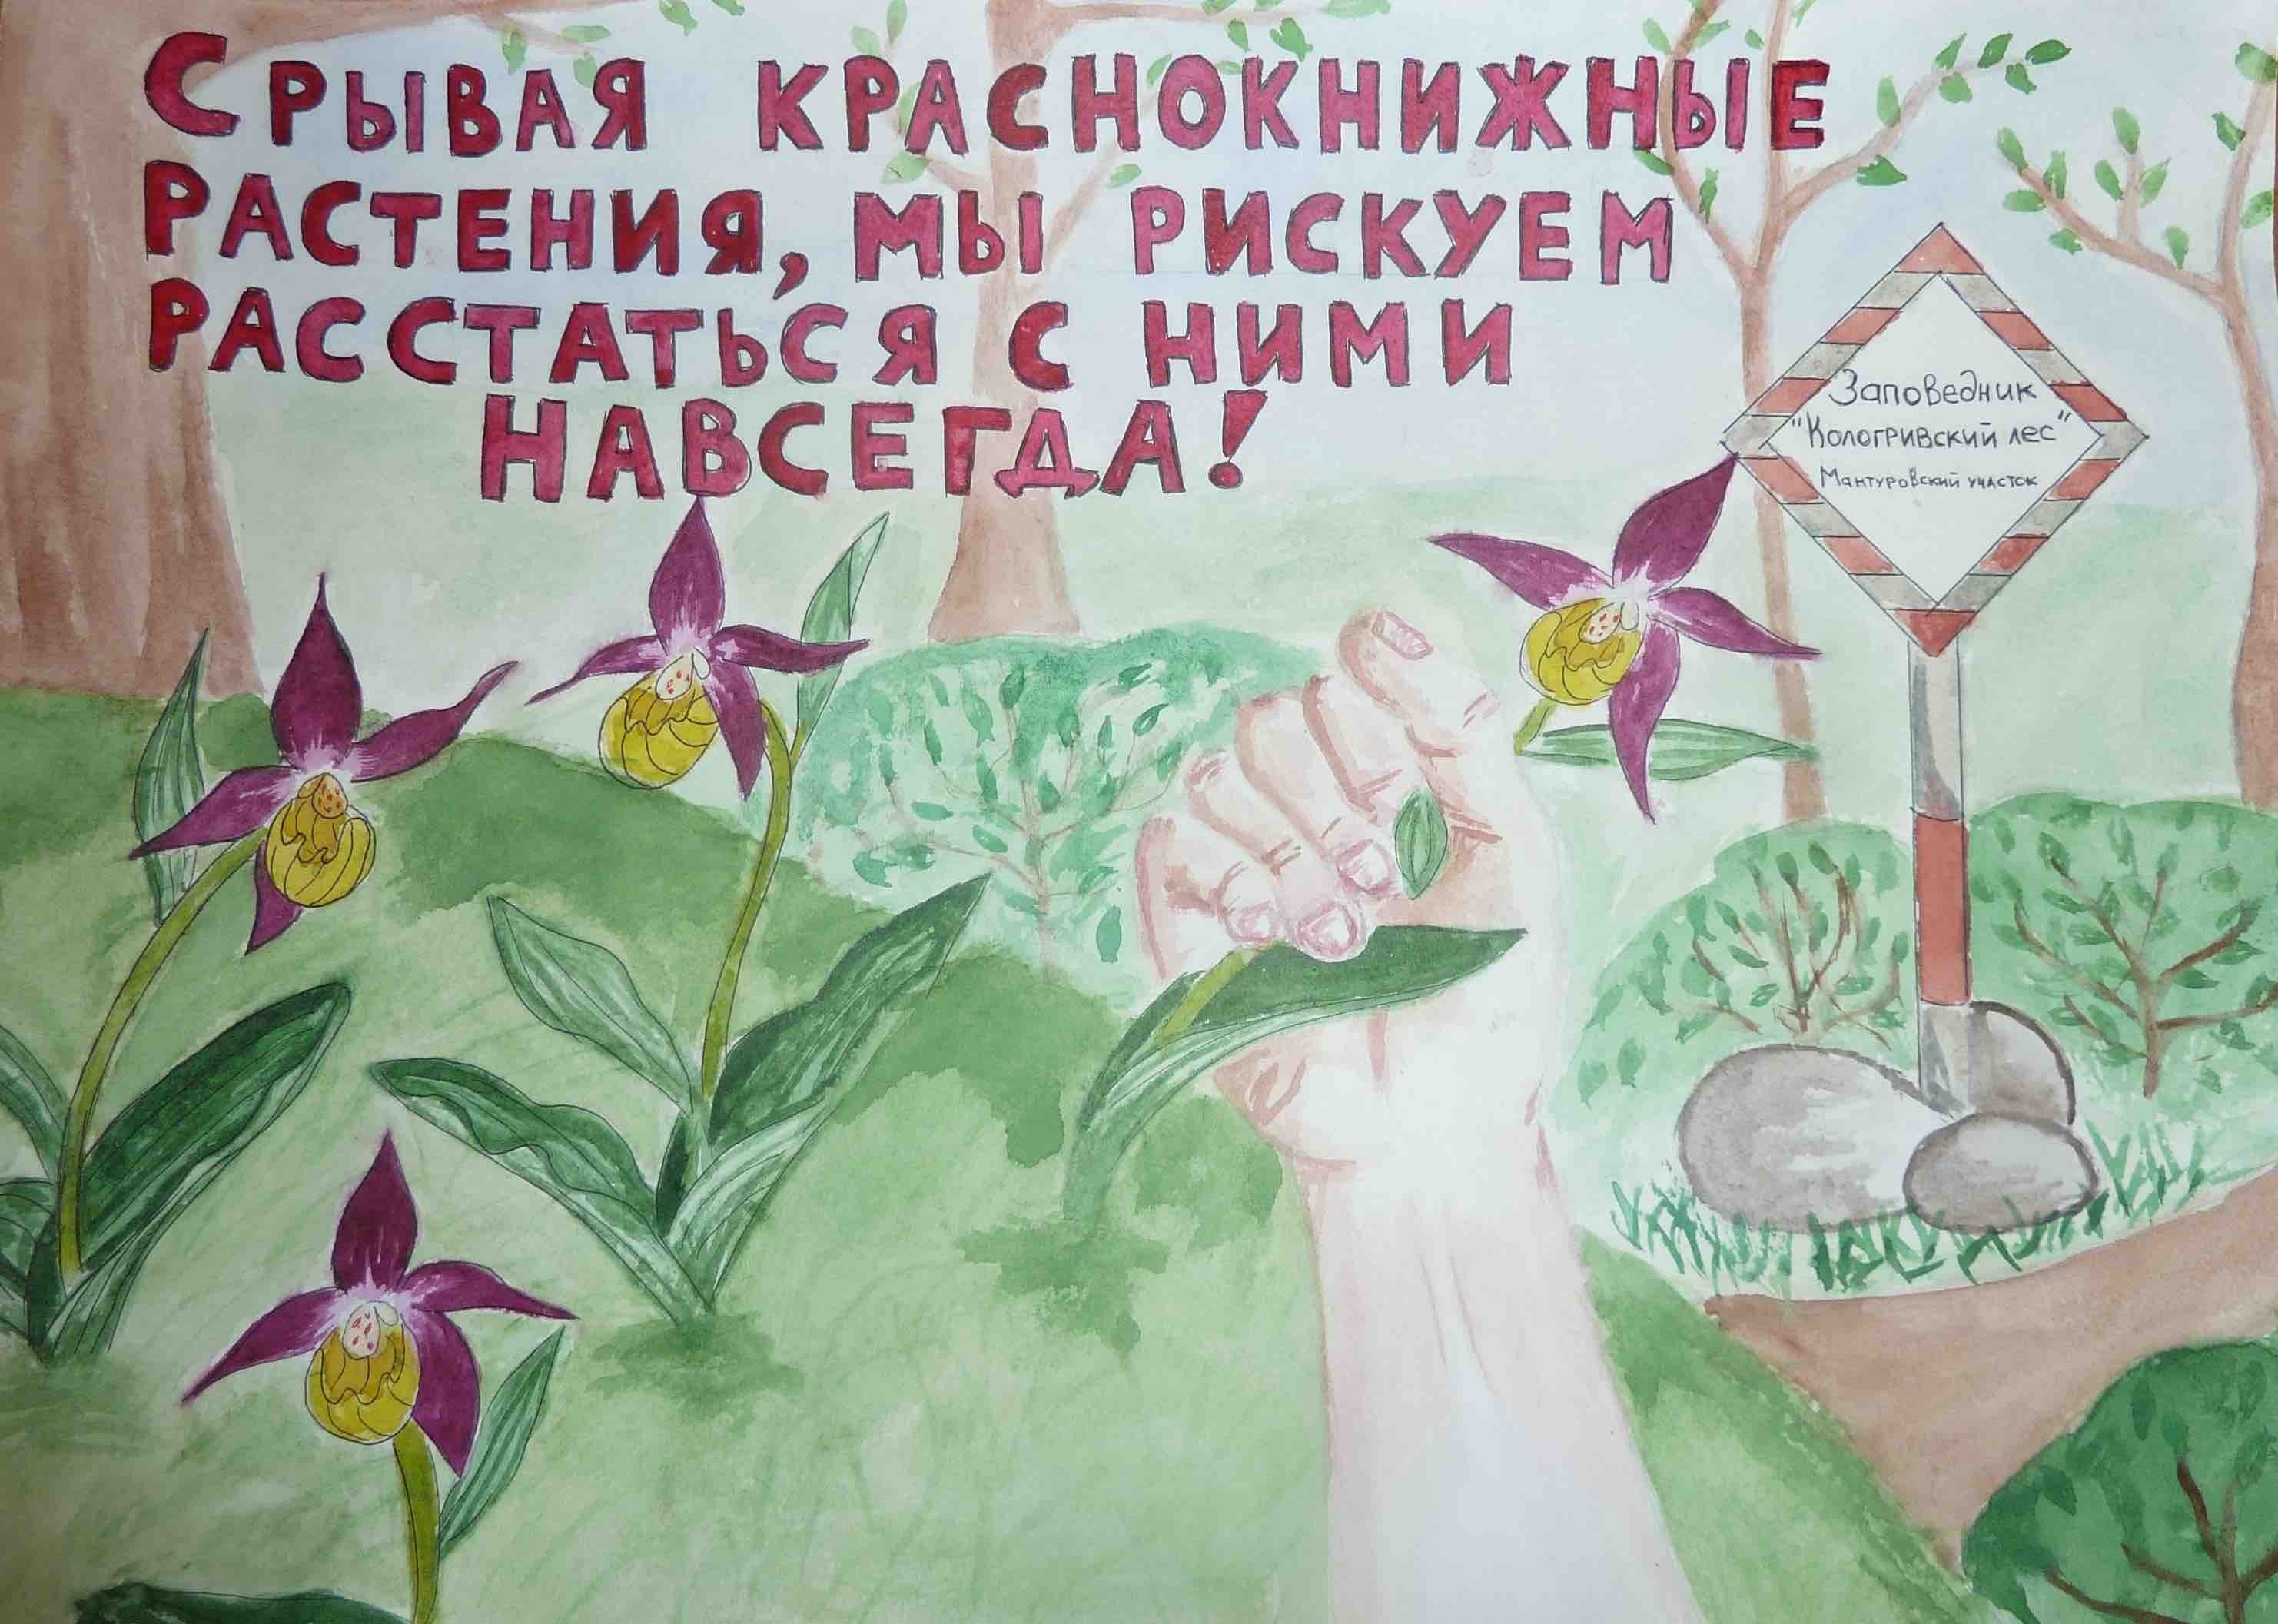 Плакат о защите редких растений